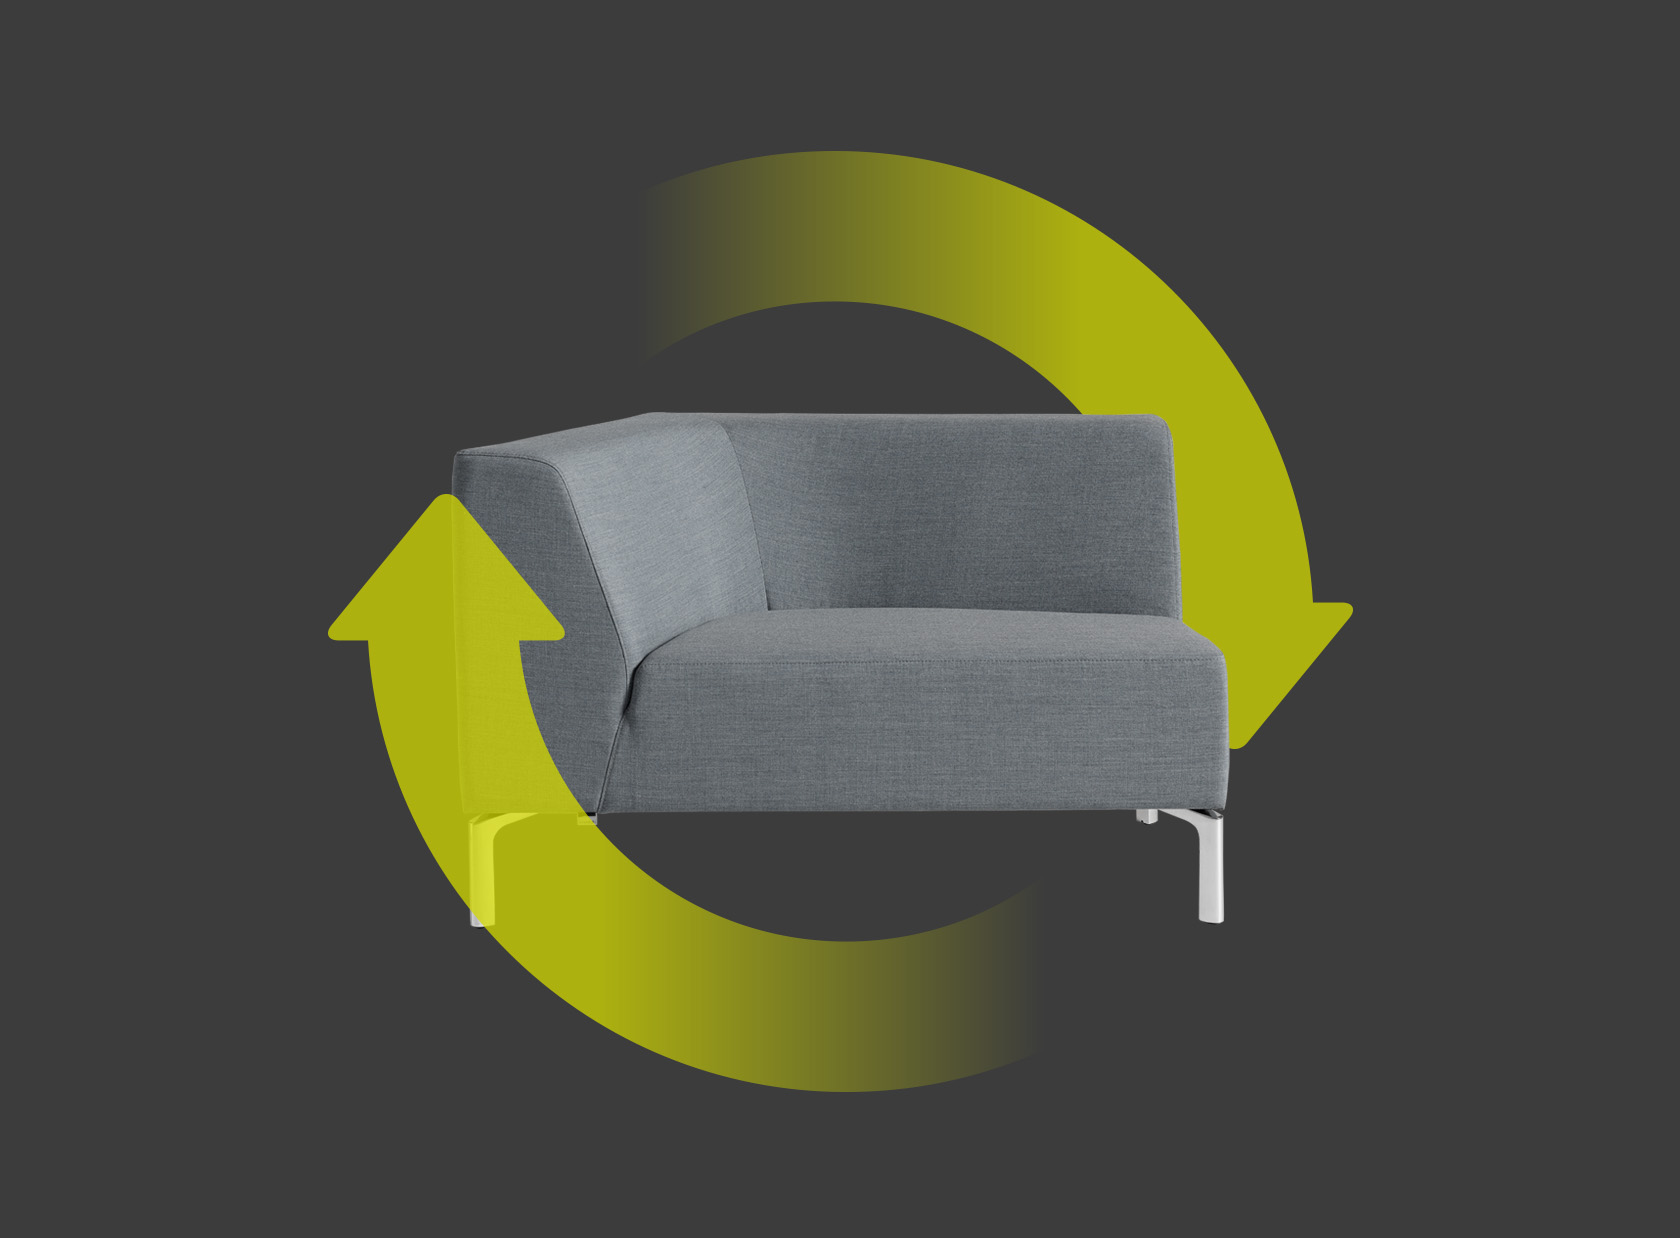 Elemento de asiento Tangram a la derecha en gris con dos flechas verdes que forman un círculo alrededor del elemento de asiento. Estas hacen referencia a la sostenibilidad y la reciclabilidad de la silla.